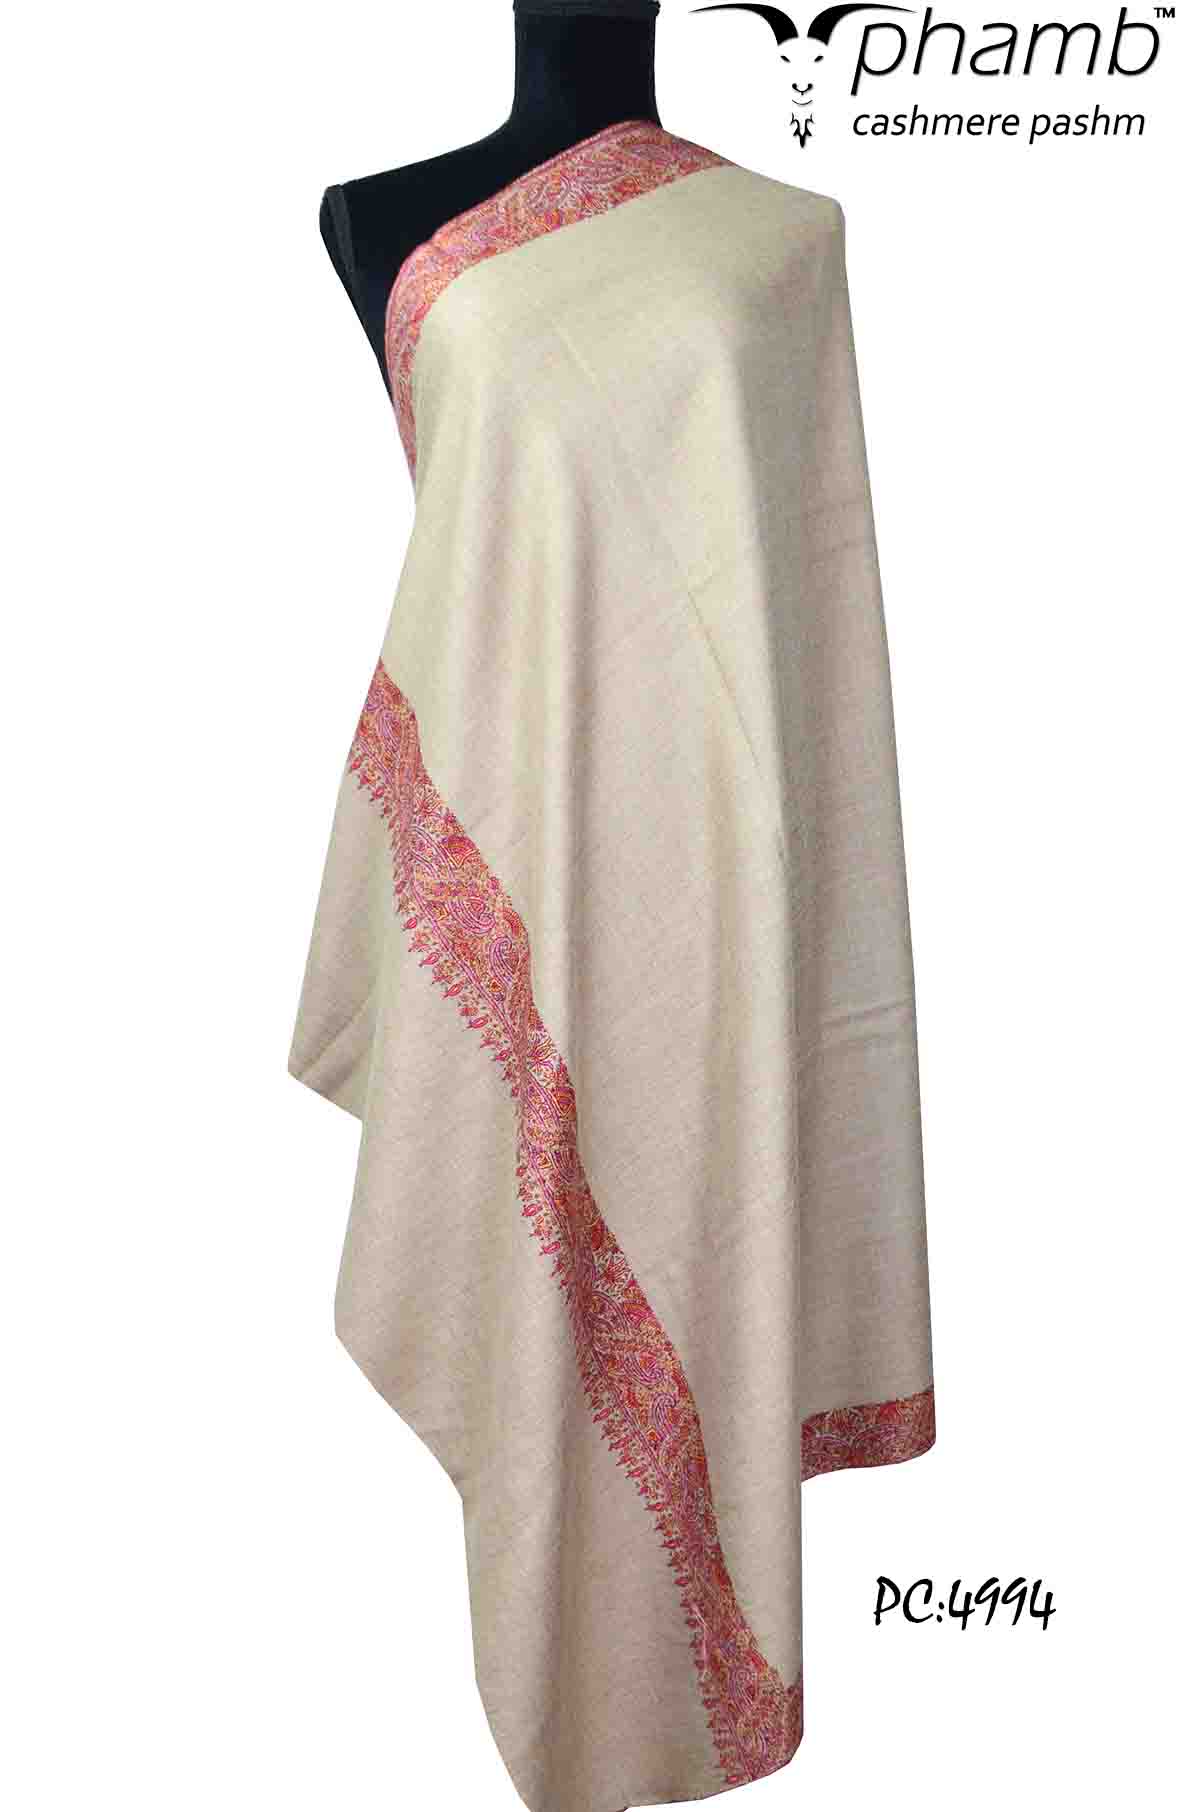 natural sozni shawl - 4994